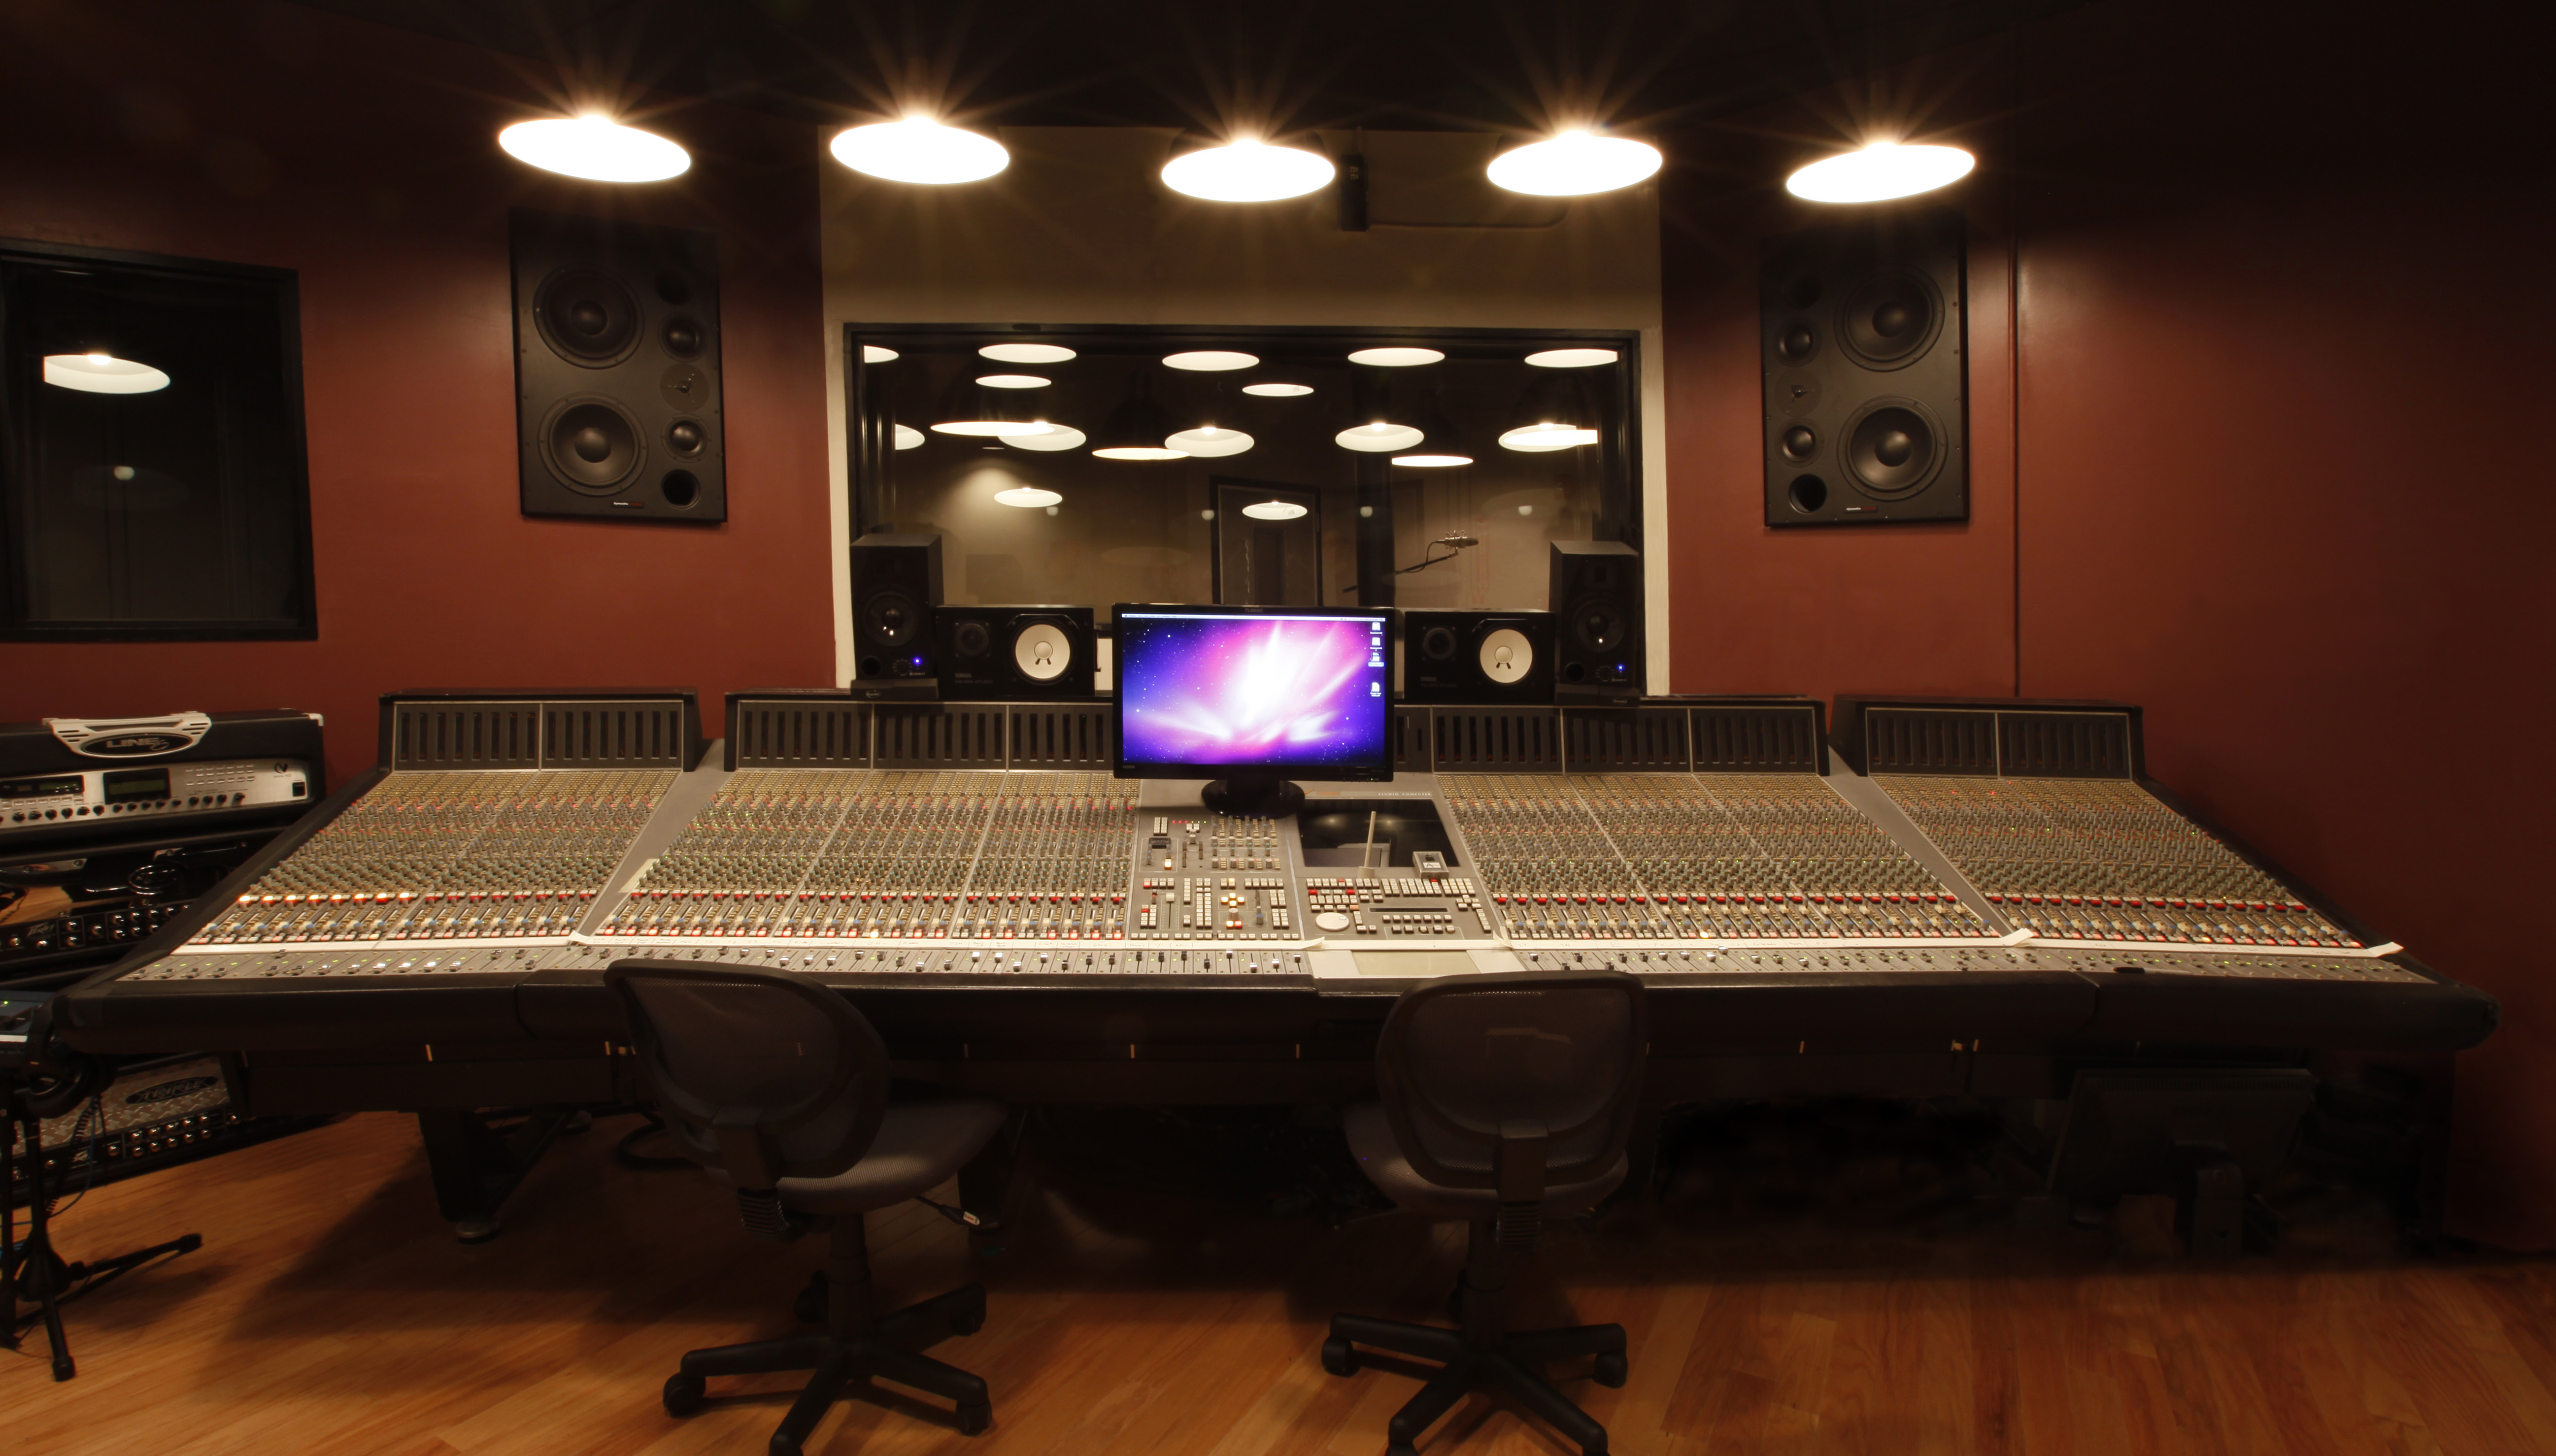 Recording Studio Wallpaper Hd Widescreen 30 1080p Wallpaperizcom